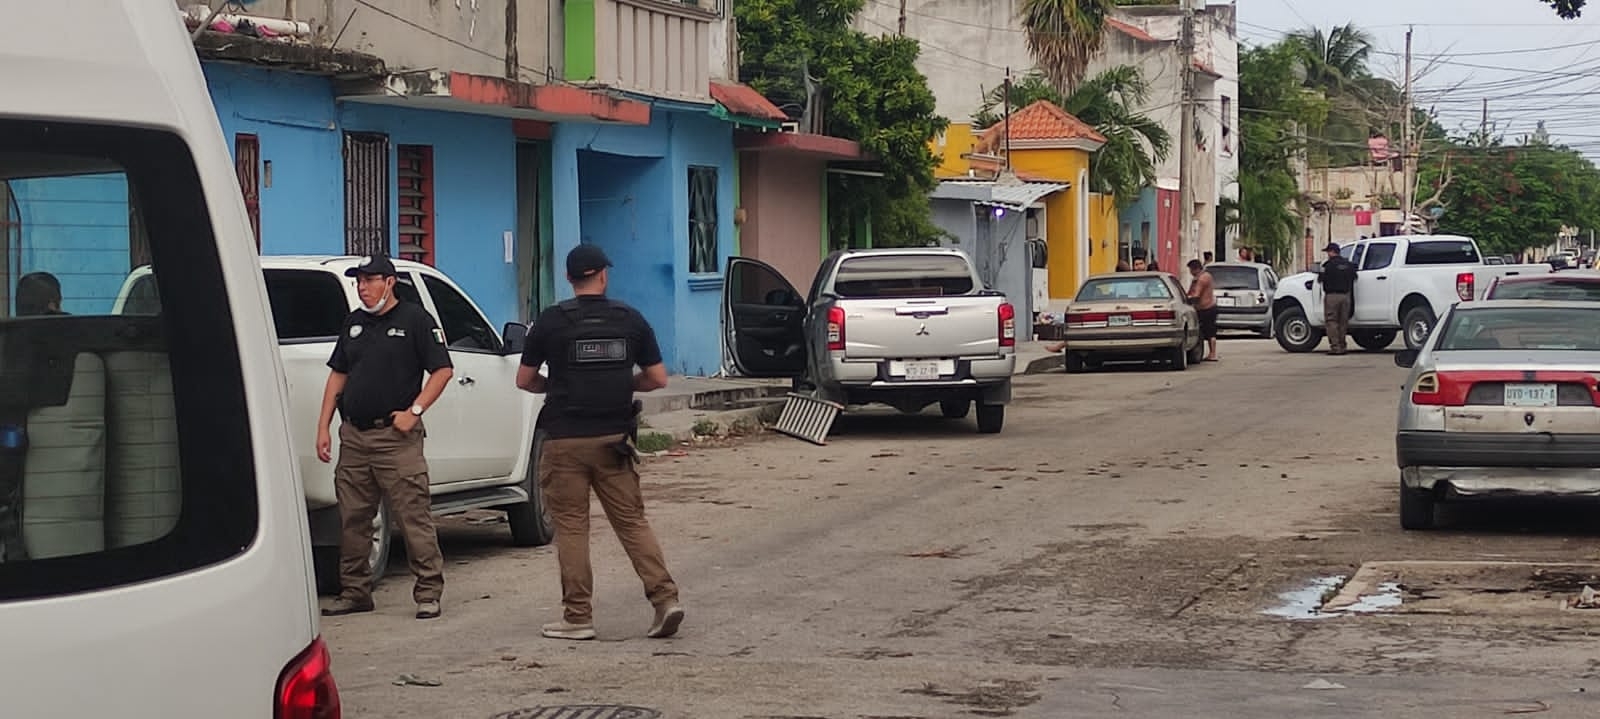 Aseguran drogas y detienen a cinco personas en cateo realizado en Playa del Carmen